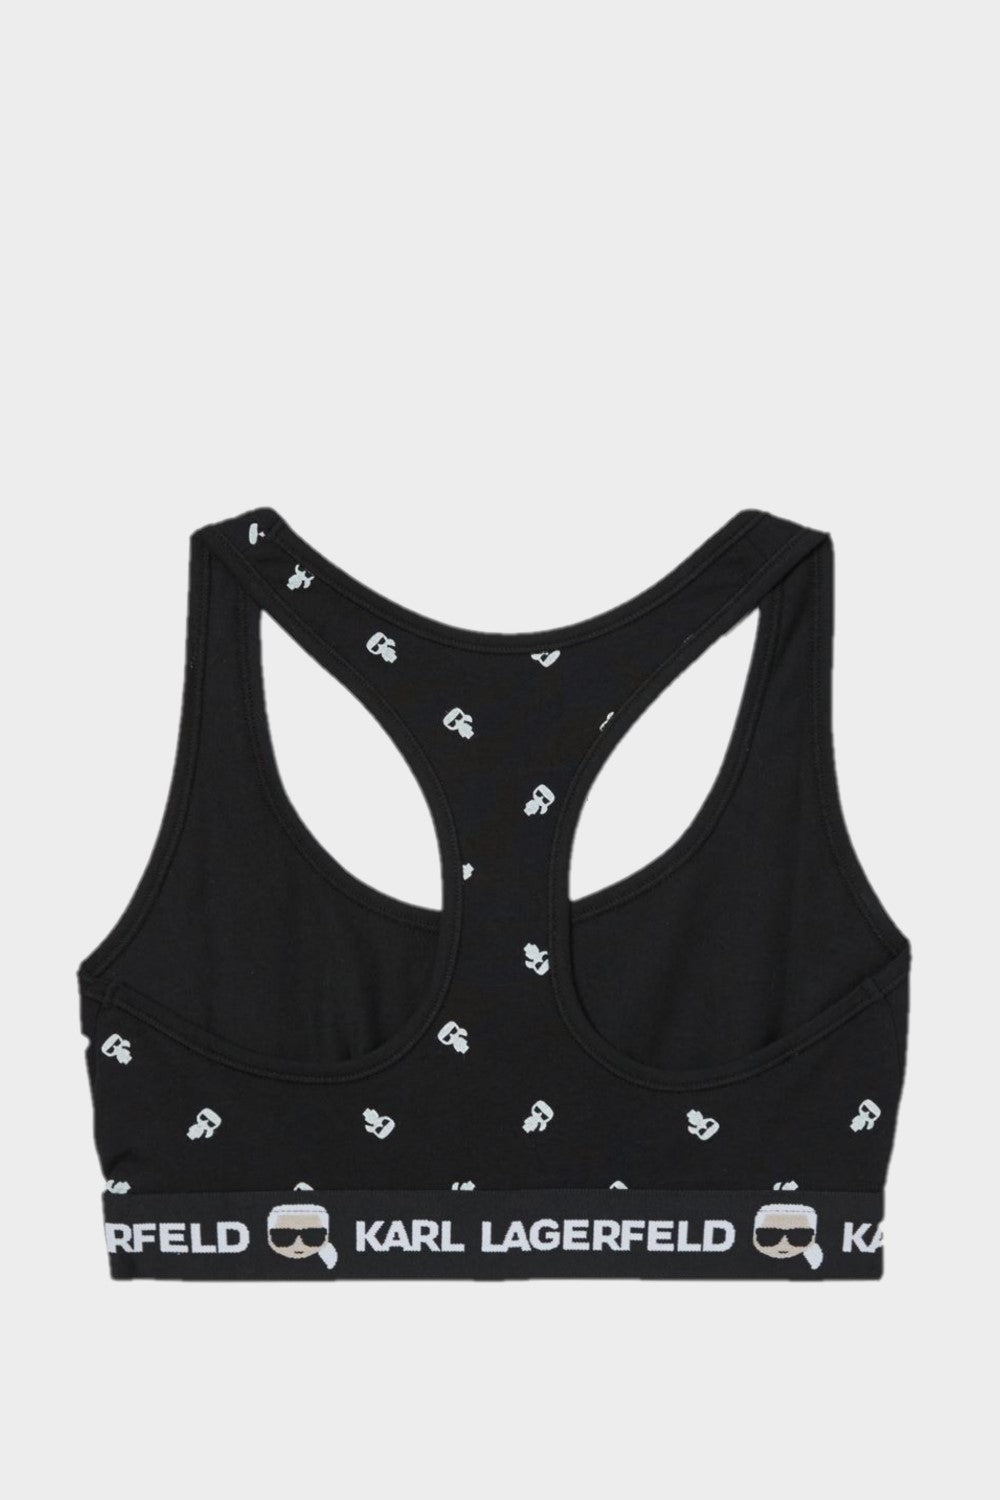 גוזיית IKONIK לנשים גומי לוגו KARL LAGERFELD Vendome online | ונדום .